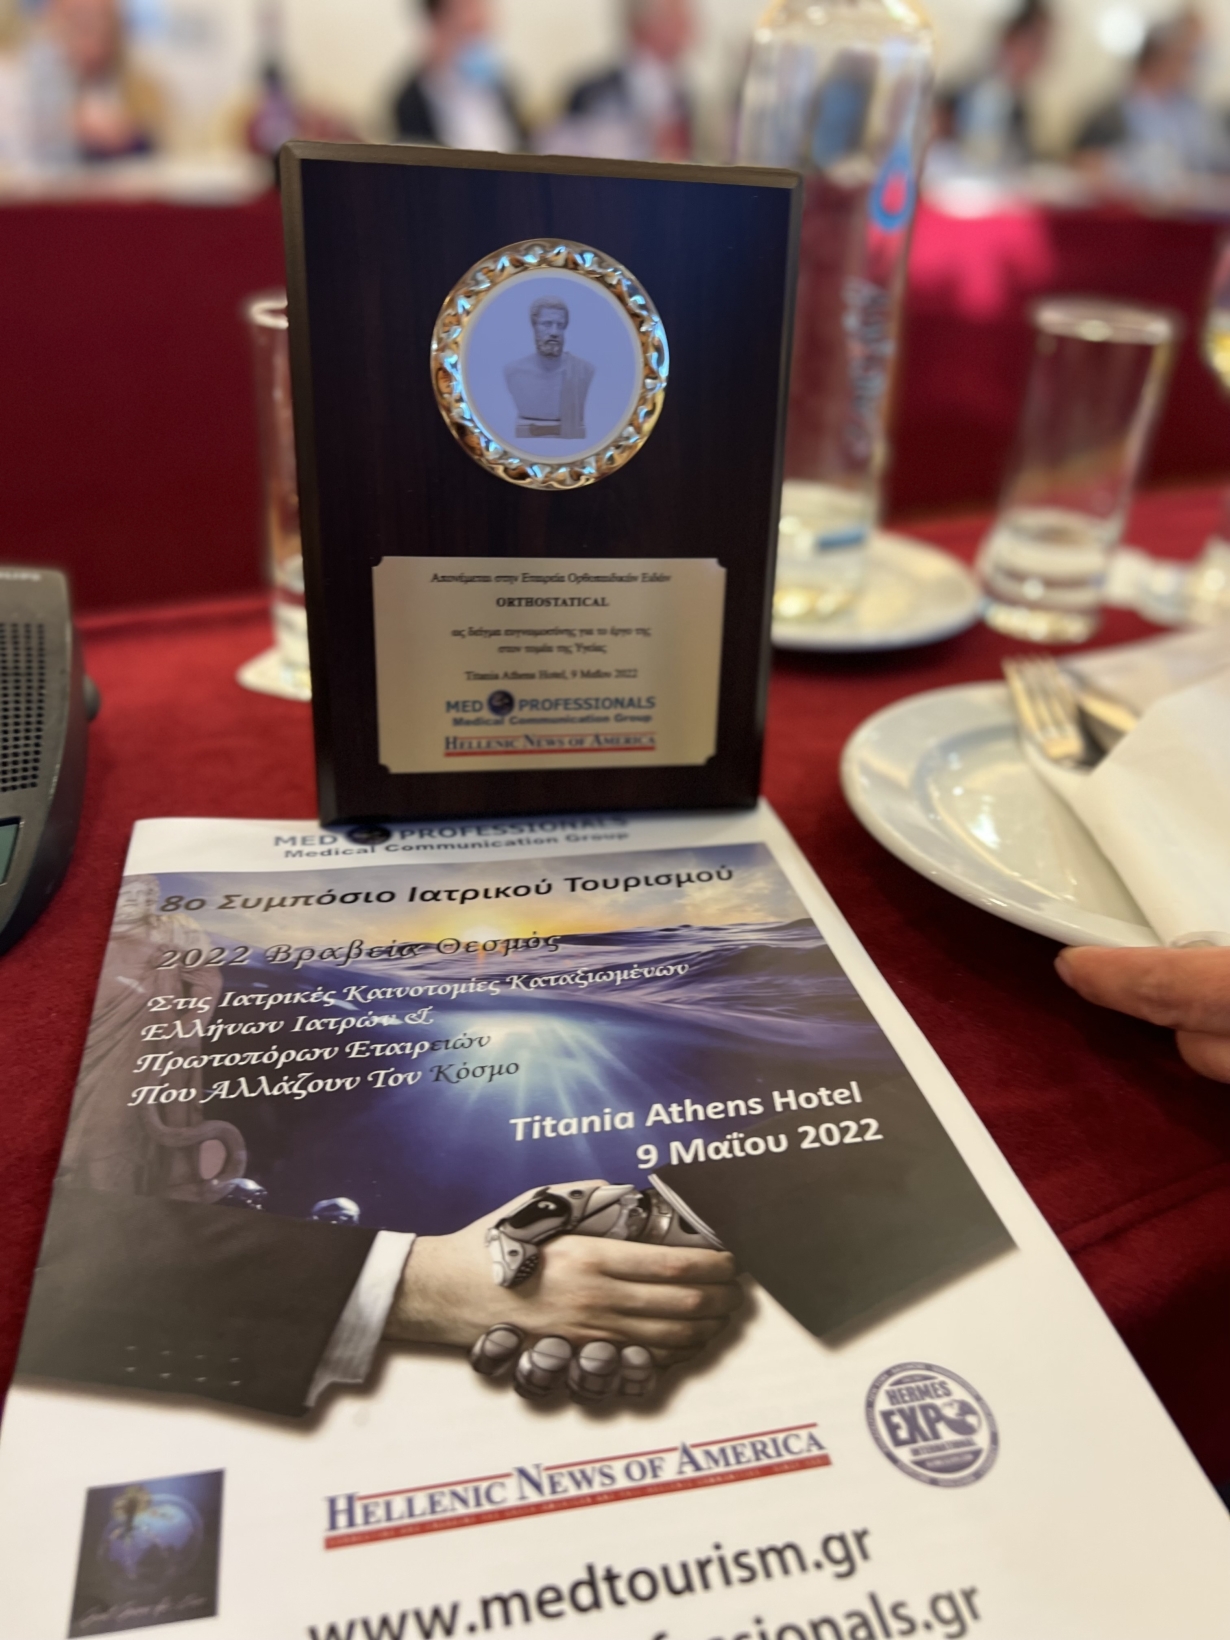 Βραβείο Καινοτόμων Εταιρειών που αλλάζουν τον κόσμο -8ο Συμπόσιο Ιατρικού Τουρισμού 2022